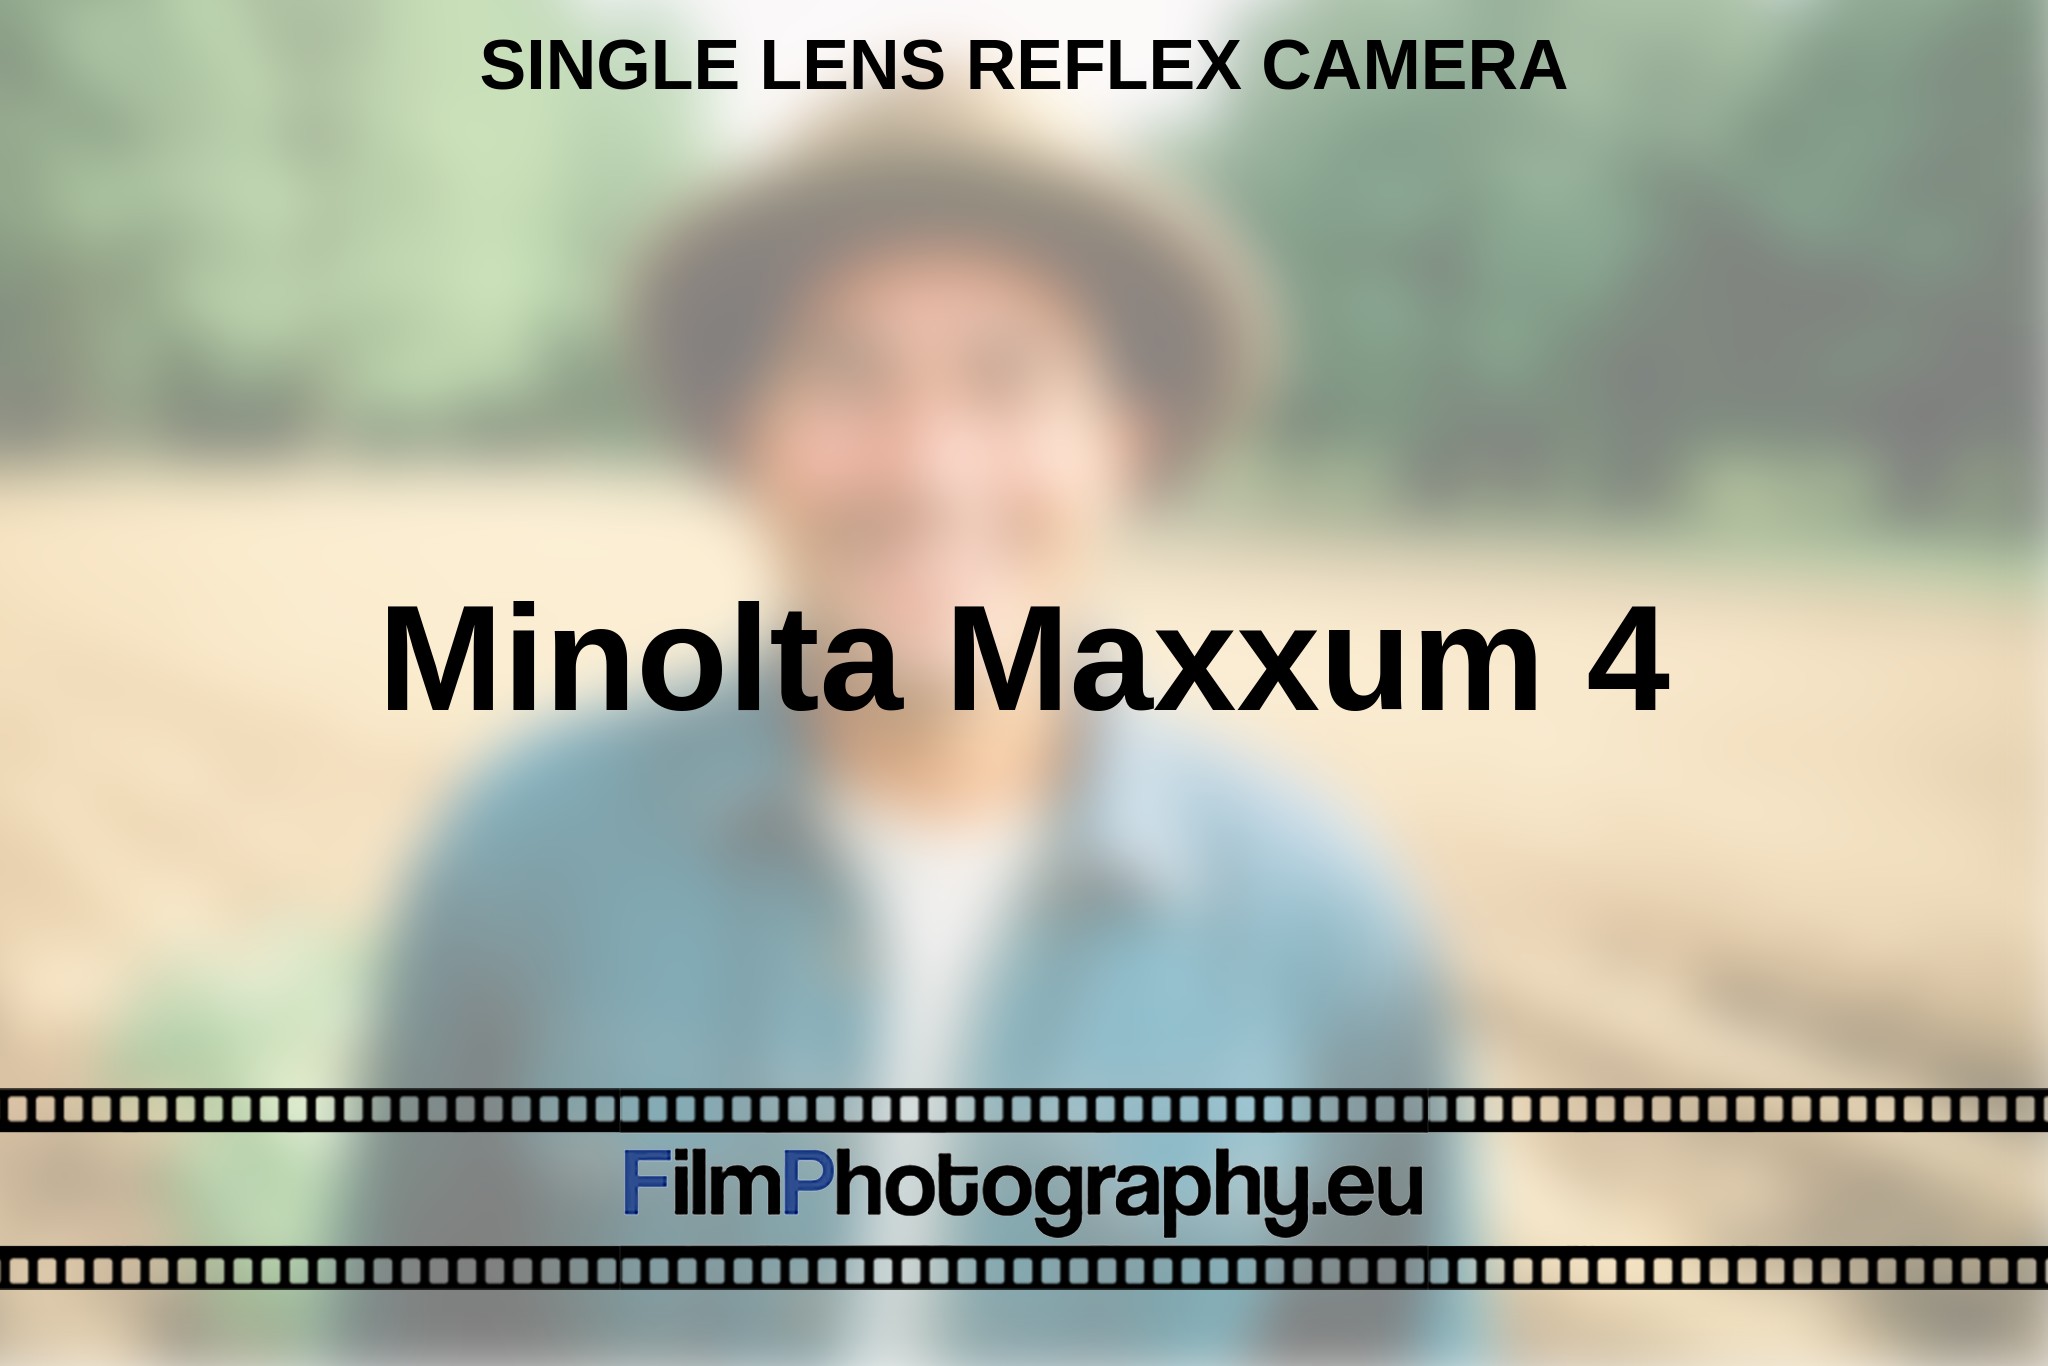 minolta-maxxum-4-single-lens-reflex-camera-en-bnv.jpg